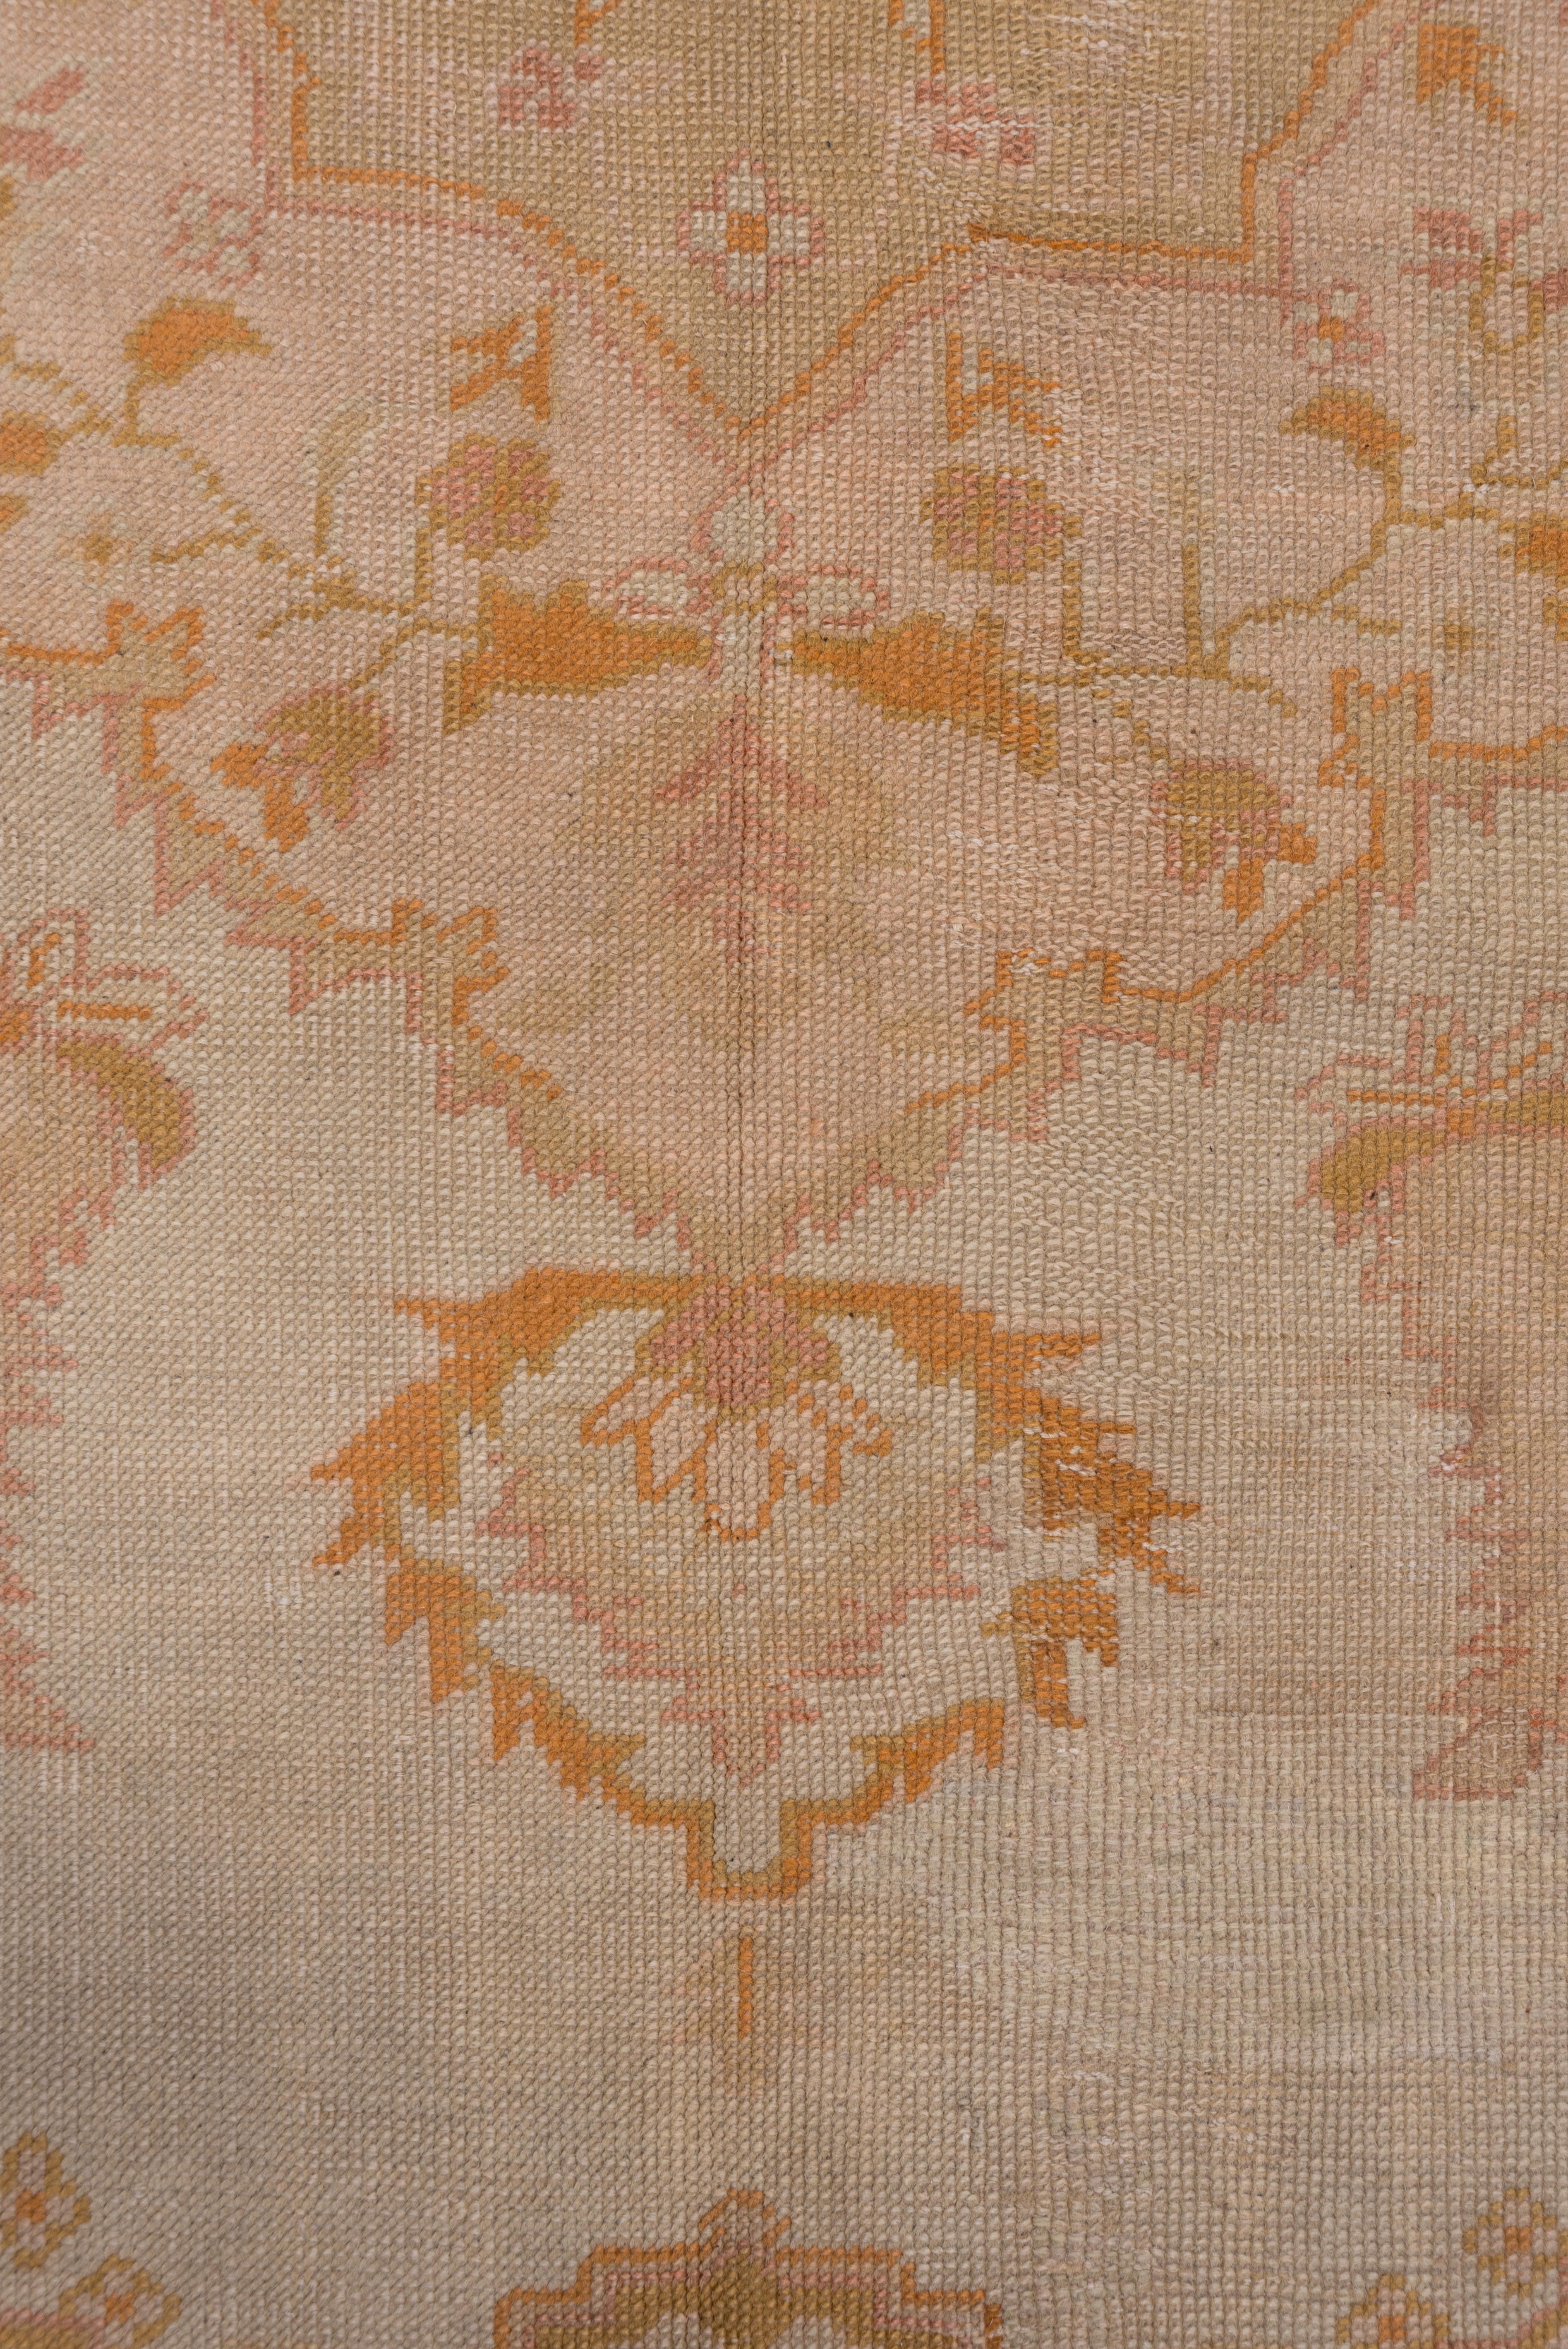 Antique Turkish Oushak Carpet, Soft Palette 1